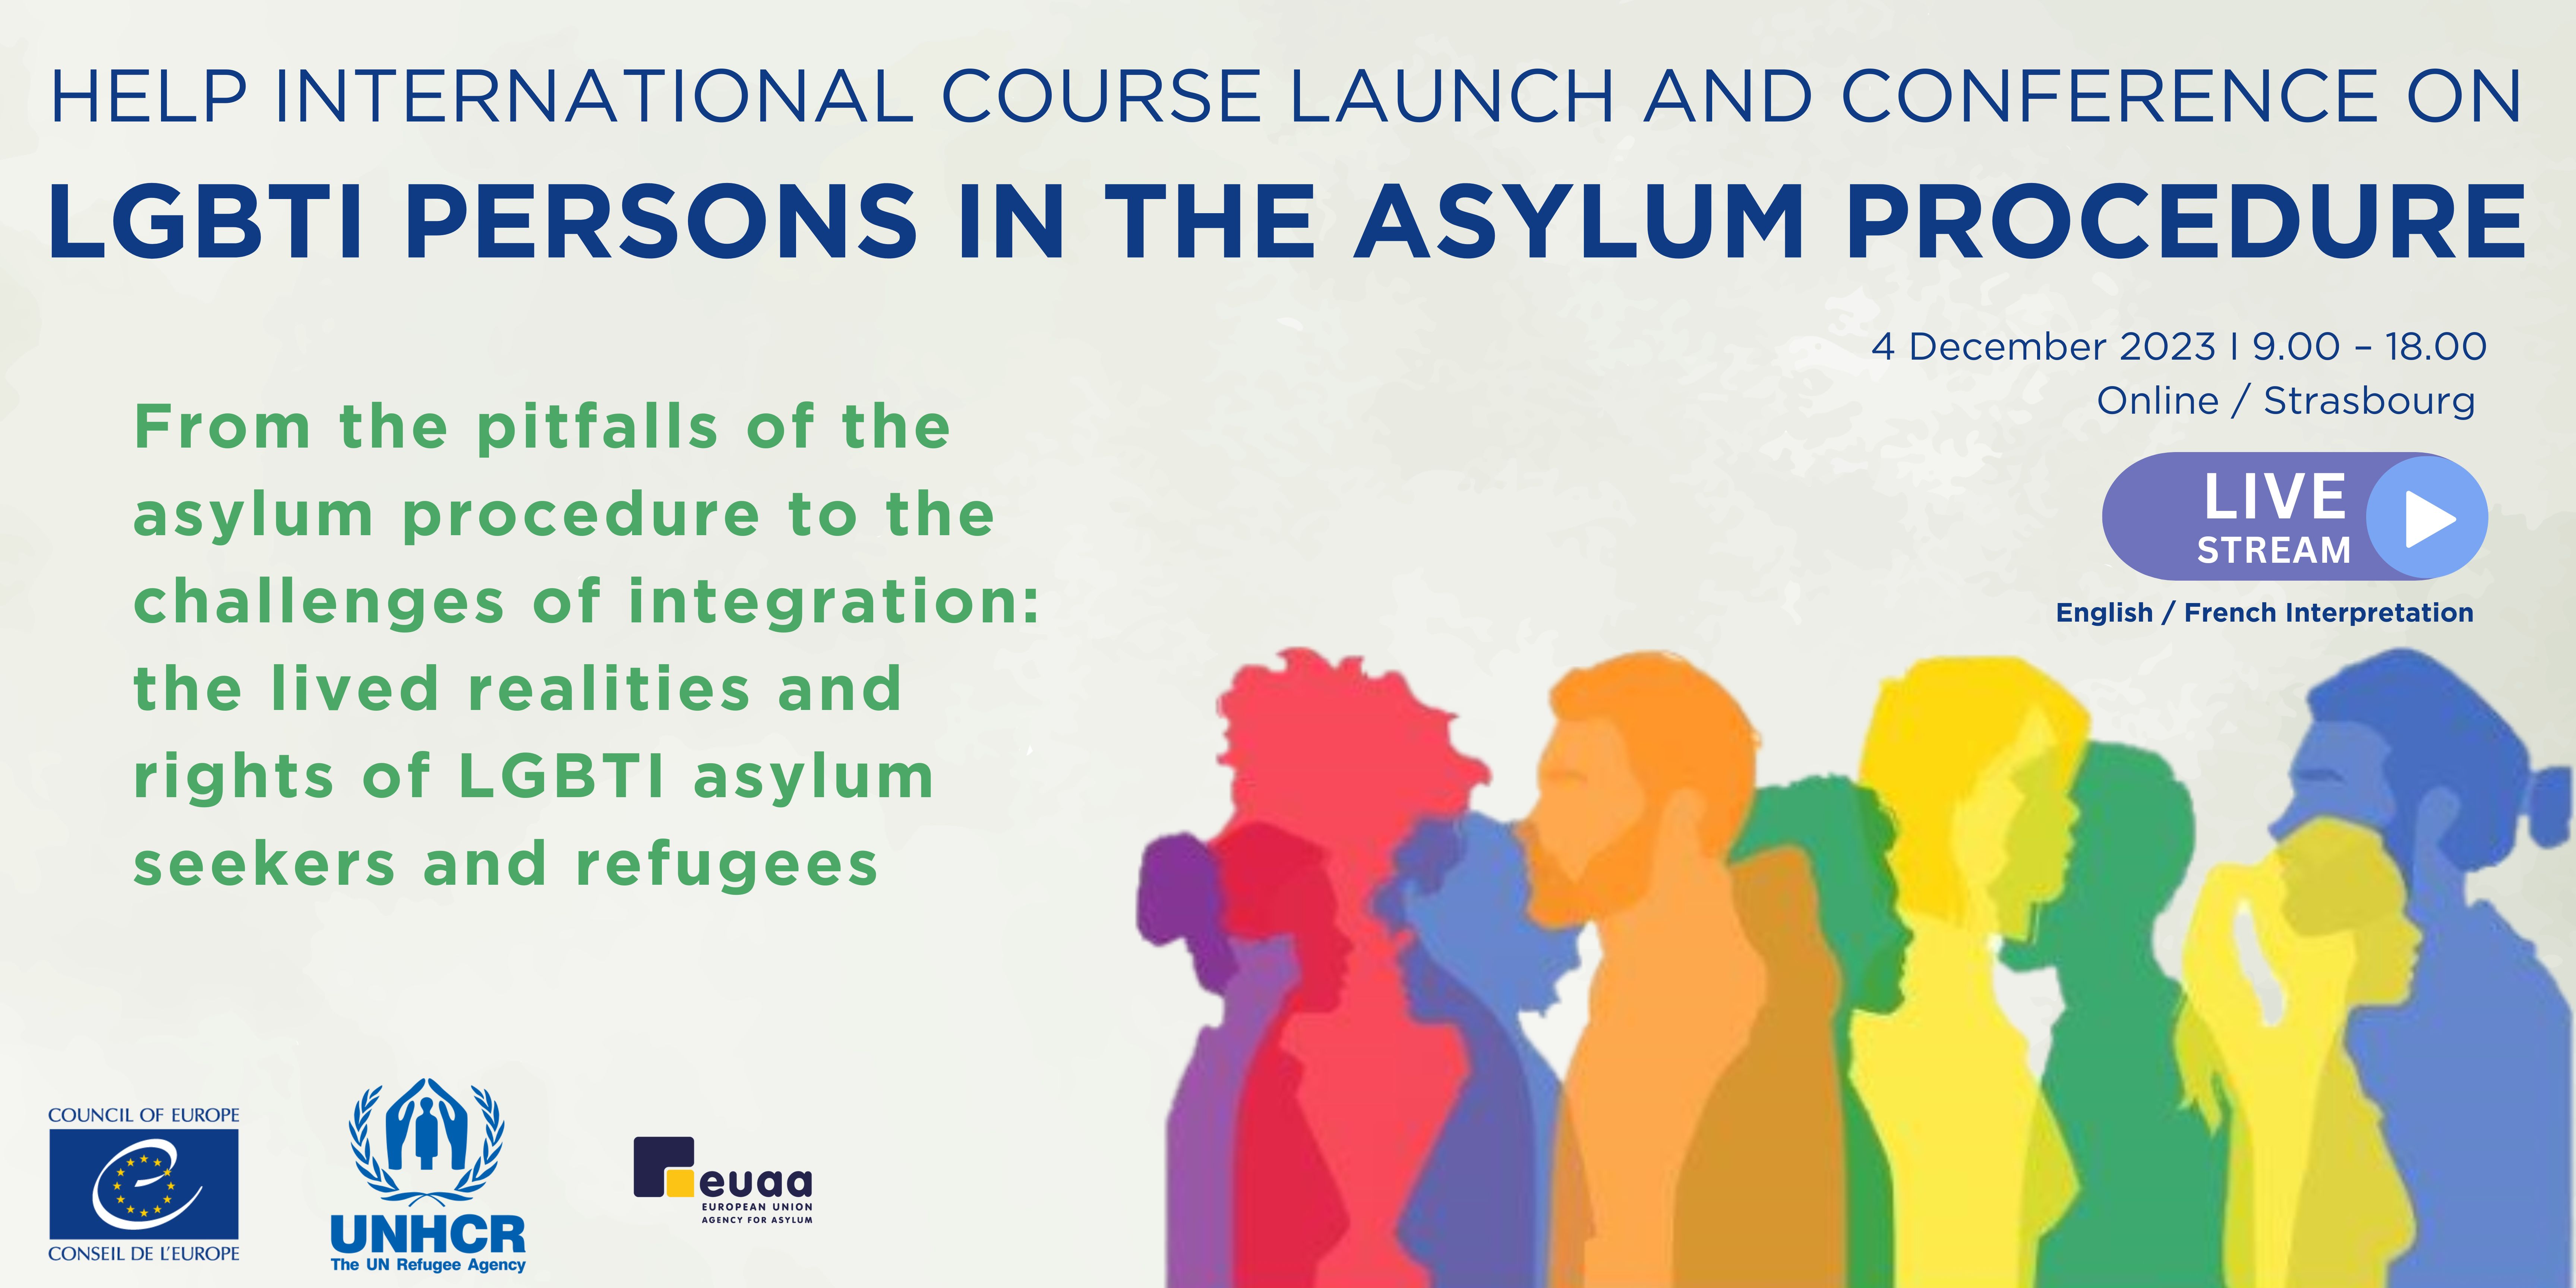 Lancement du cours international HELP et conférence sur les personnes LGBTI dans la procédure d'asile, 4 décembre 2023